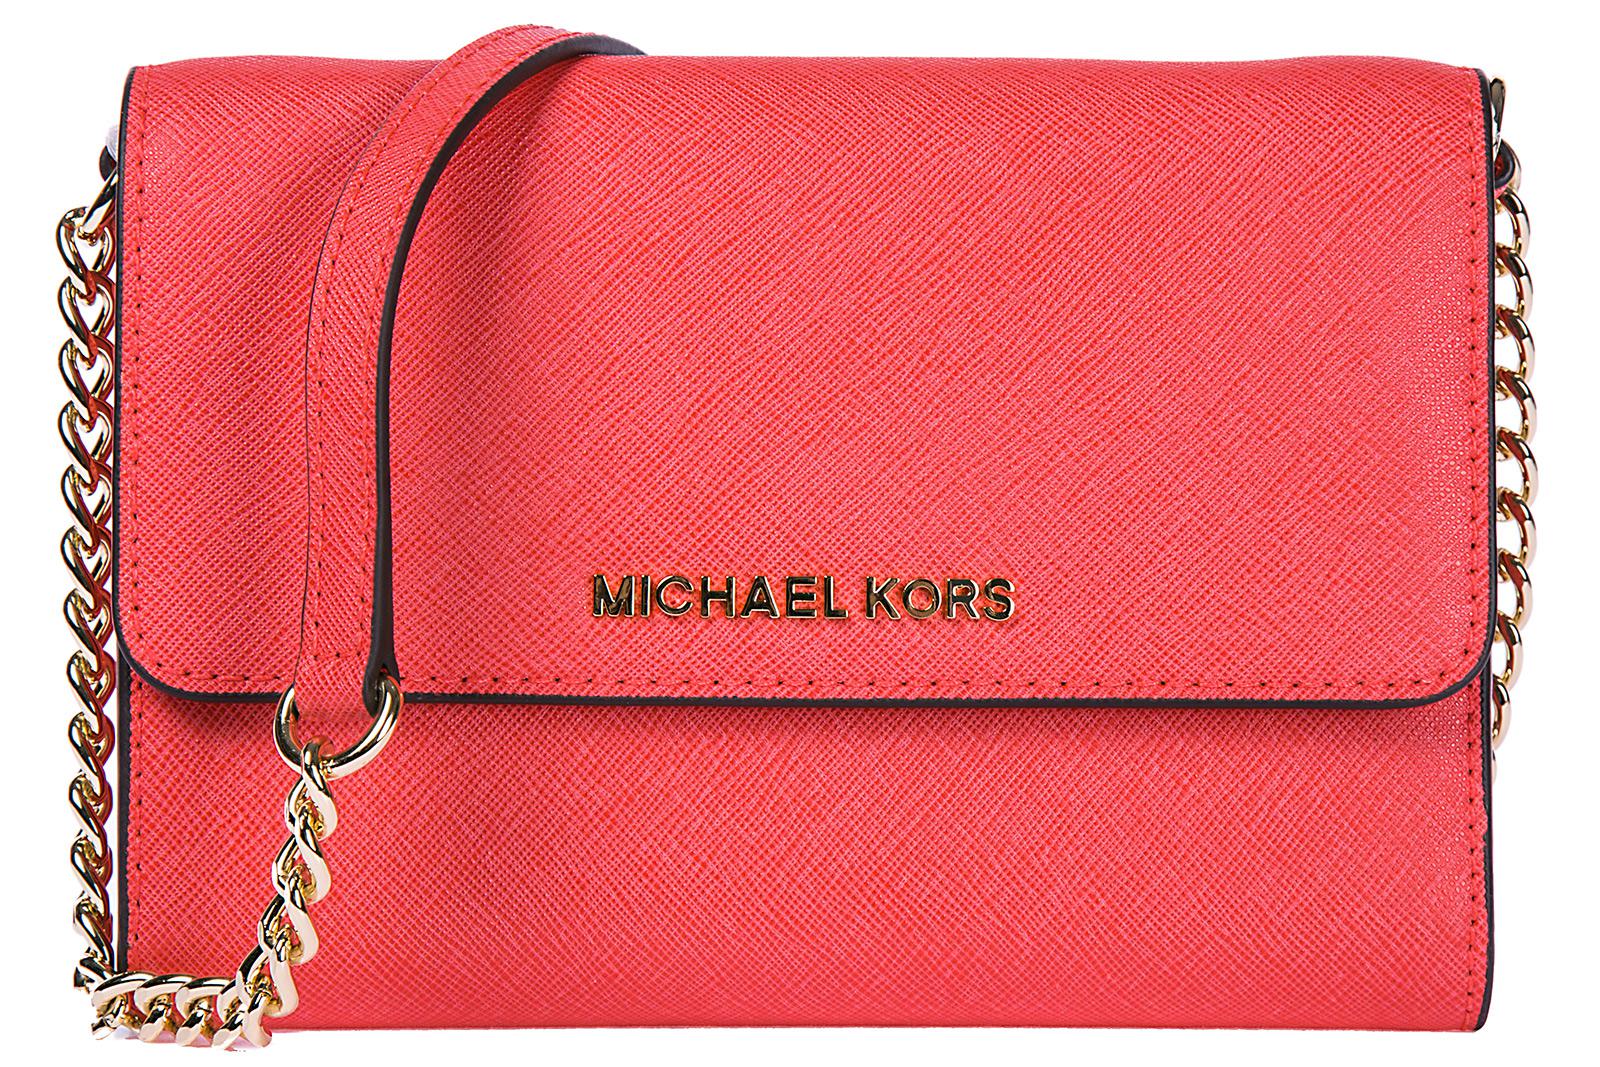 Michael Kors Leather Clutch With Shoulder Strap Handbag Bag Purse Jet Set Travel Lg Phone ...